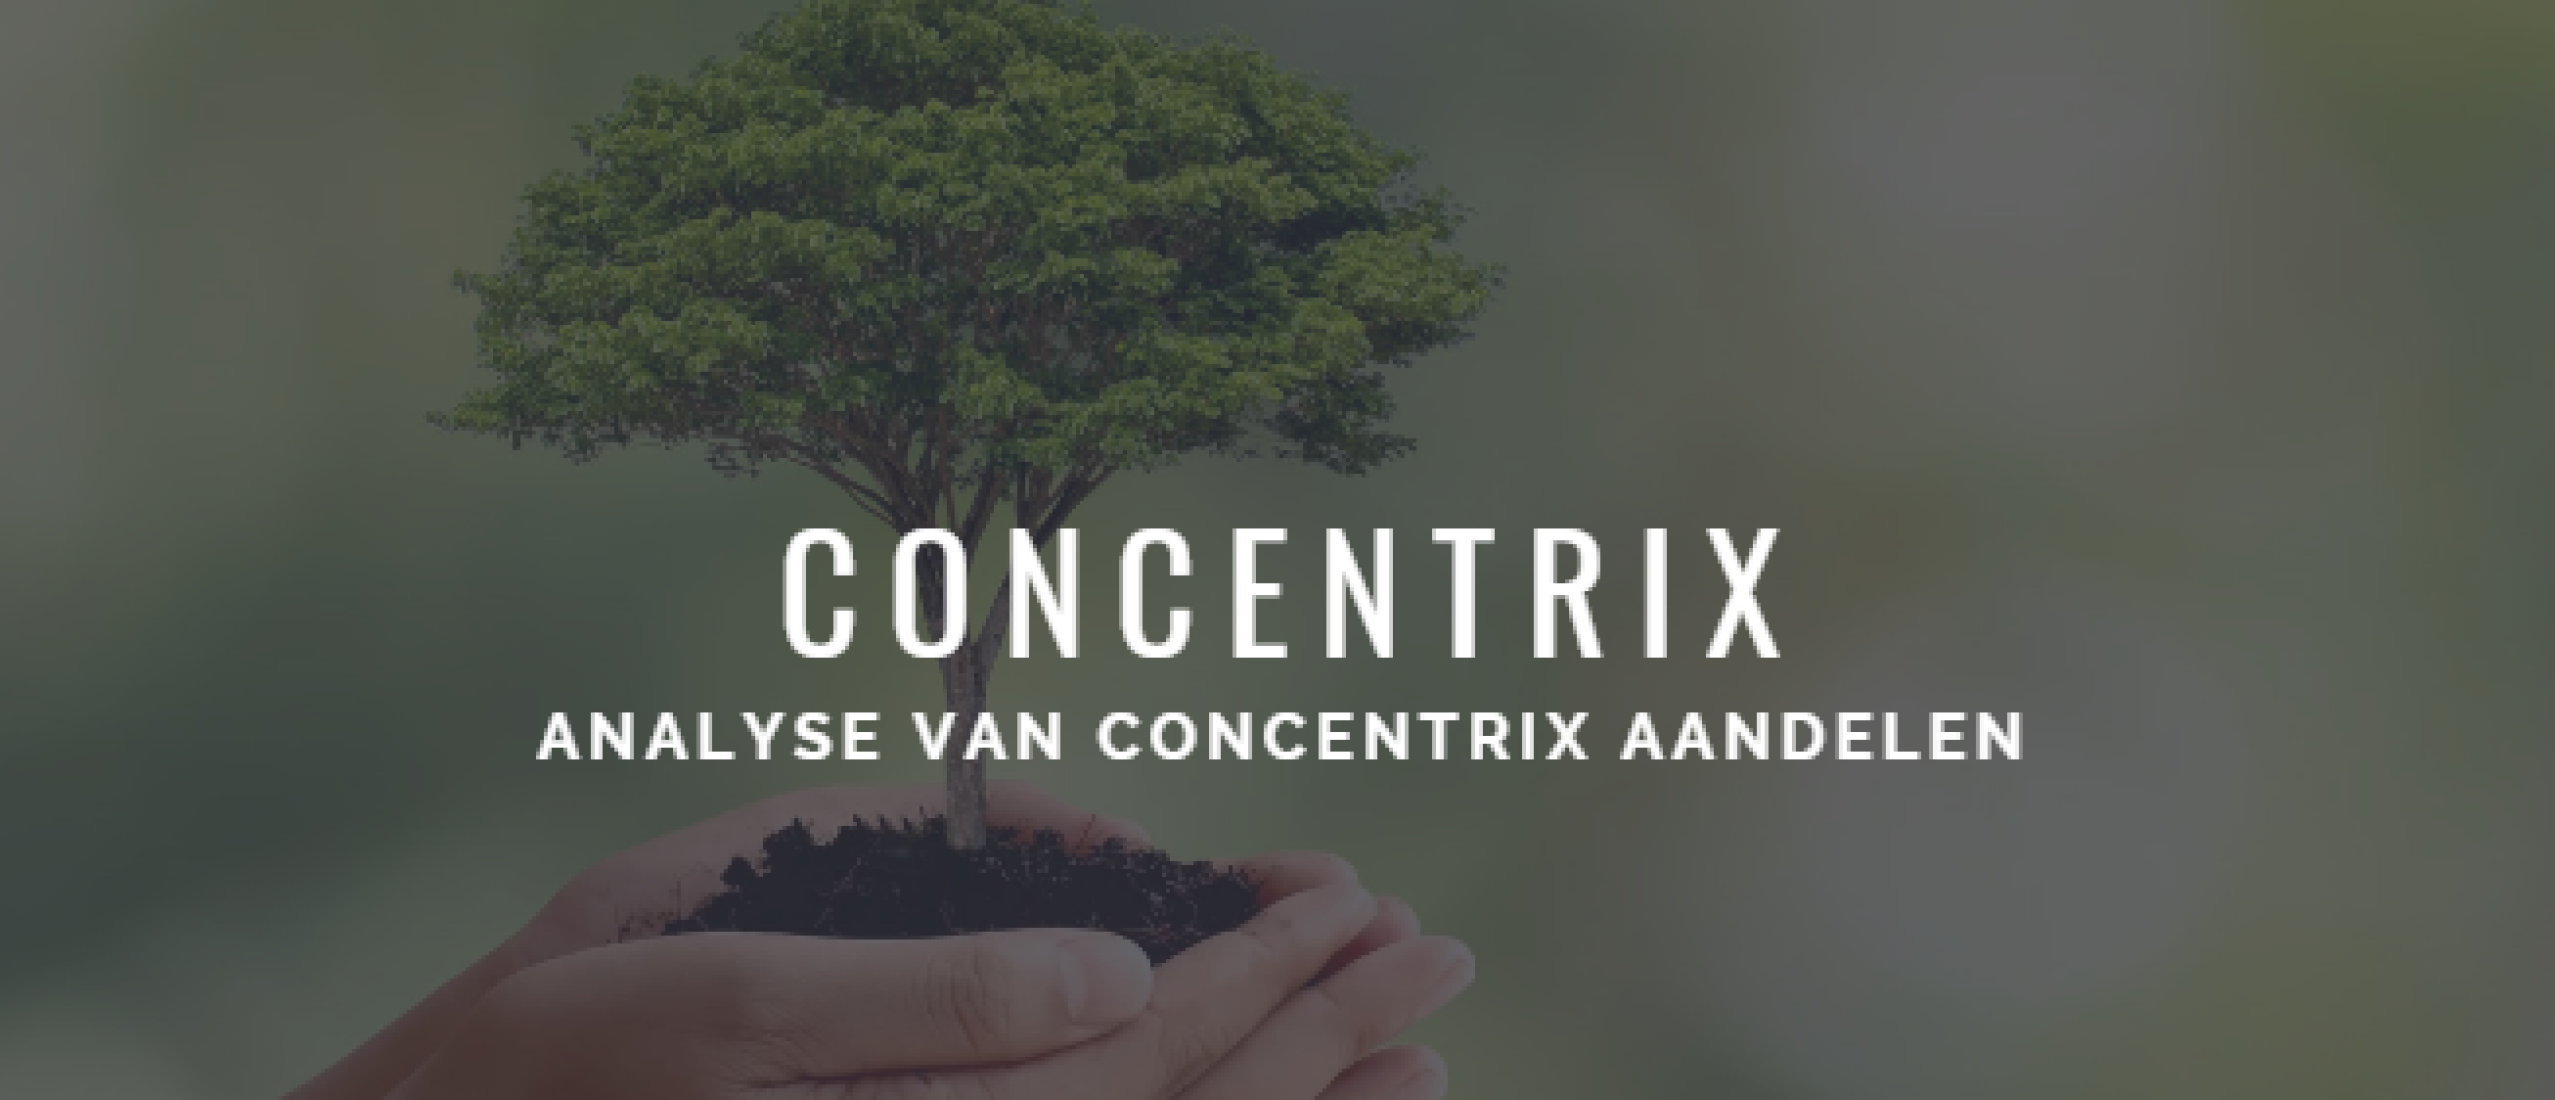 Concentrix aandelen kopen of niet? Analyse +52% Groei | Happy Investors